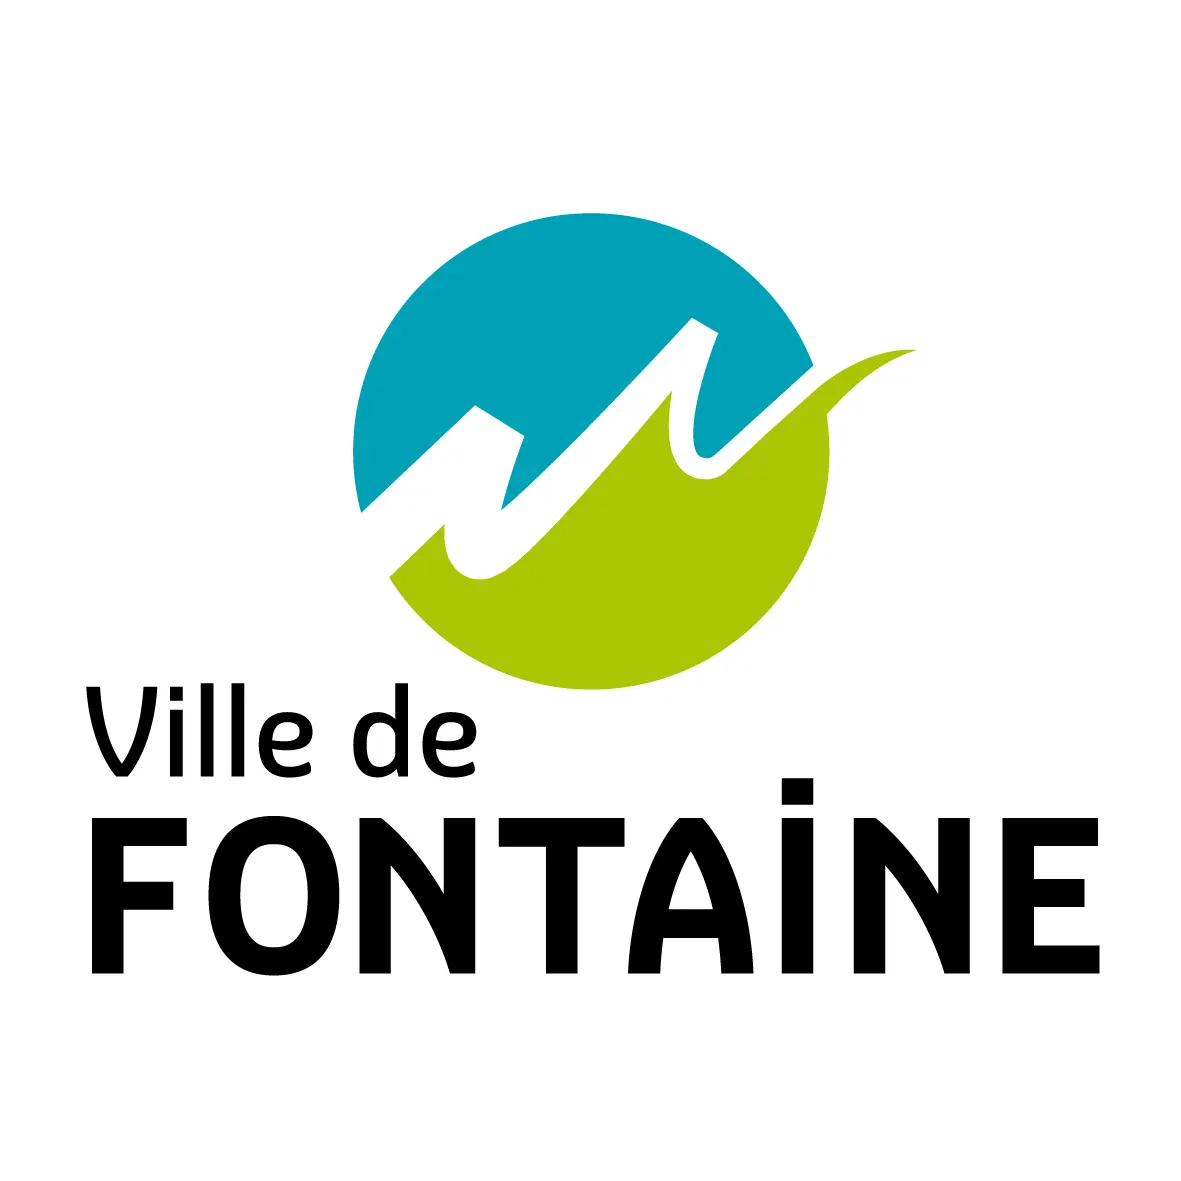 Ville de Fontaine logo